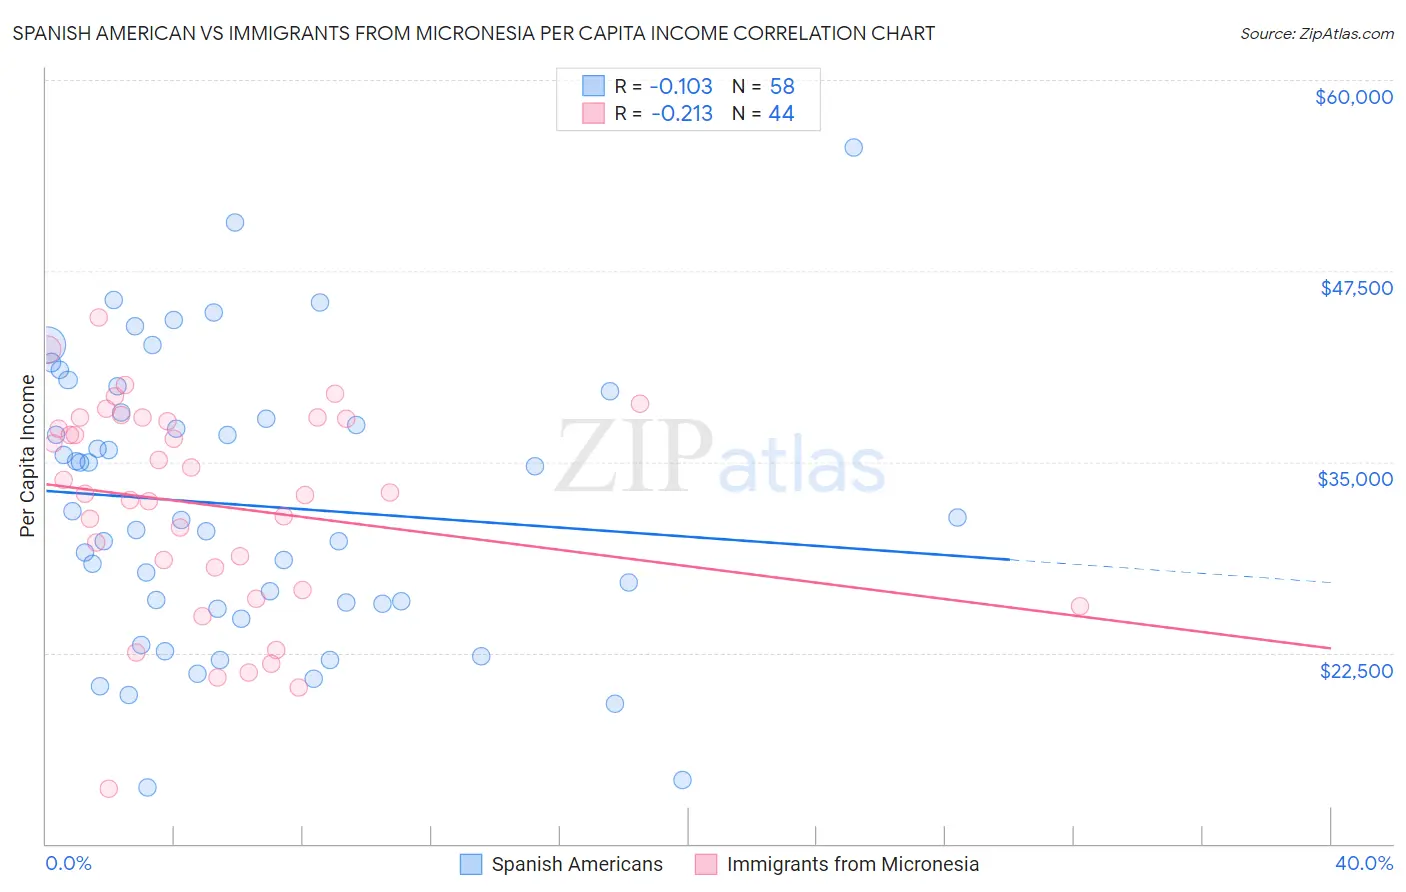 Spanish American vs Immigrants from Micronesia Per Capita Income